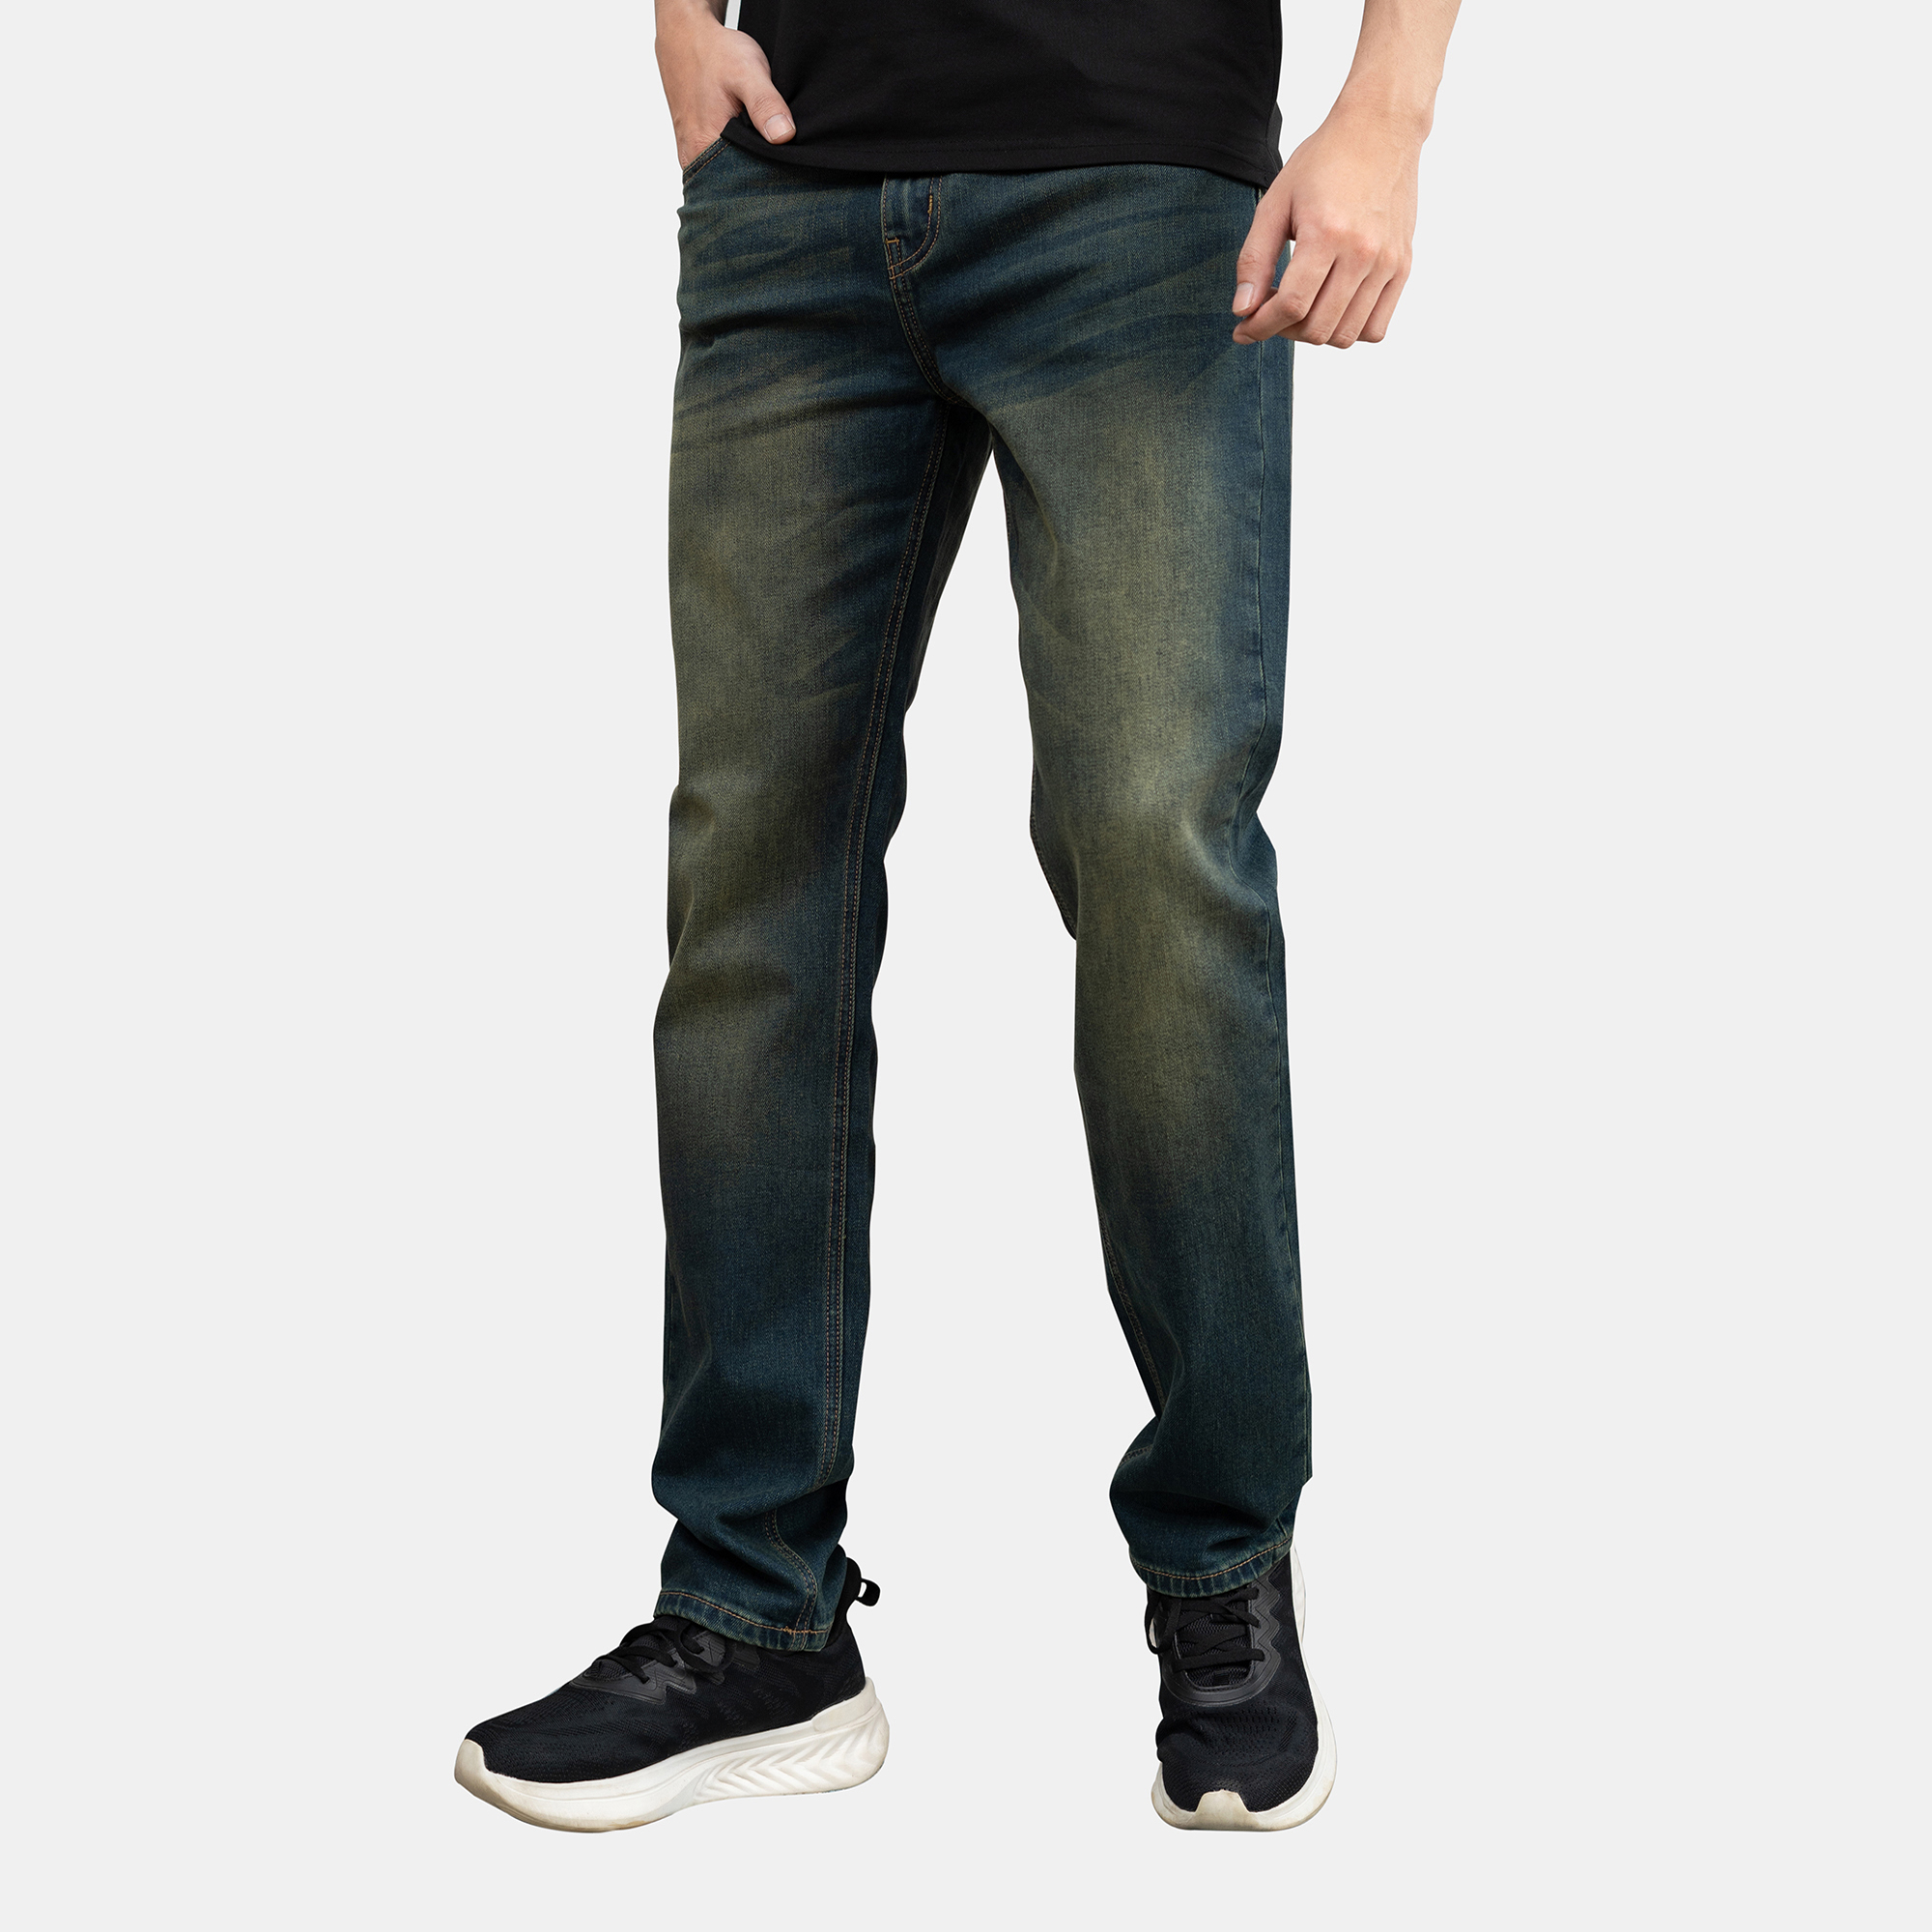 Quần jean nam xanh rêu JONATHAN QJ023 vải denim cao cấp co giãn nhẹ 4 chiều, form dáng chuẩn đẹp, trẻ trung, hottrend, hàng chính hãng